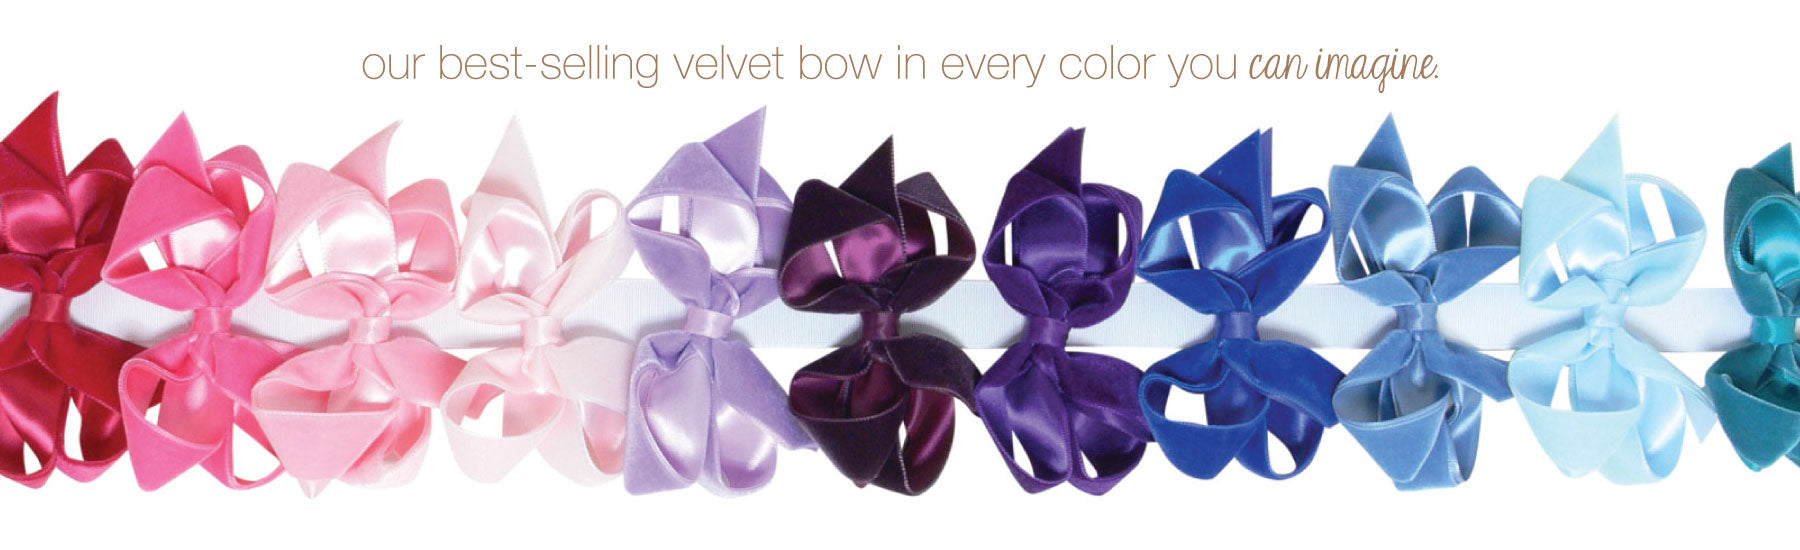 bows sarts velvet bow